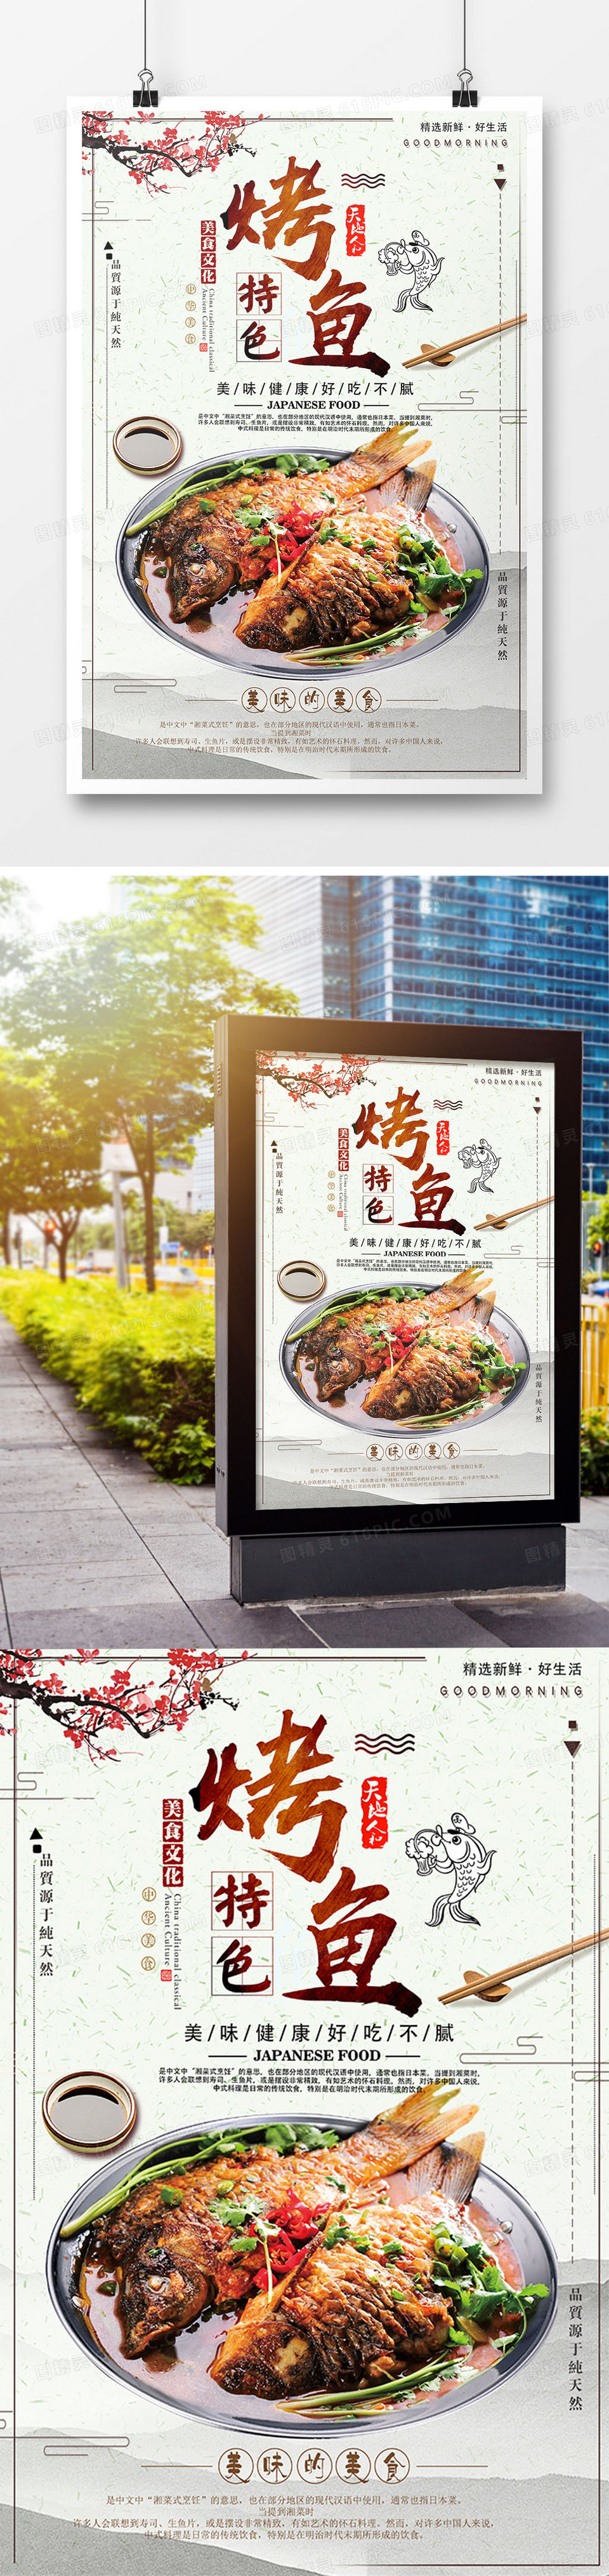 简约中国风特色餐饮美食烤鱼海报设计